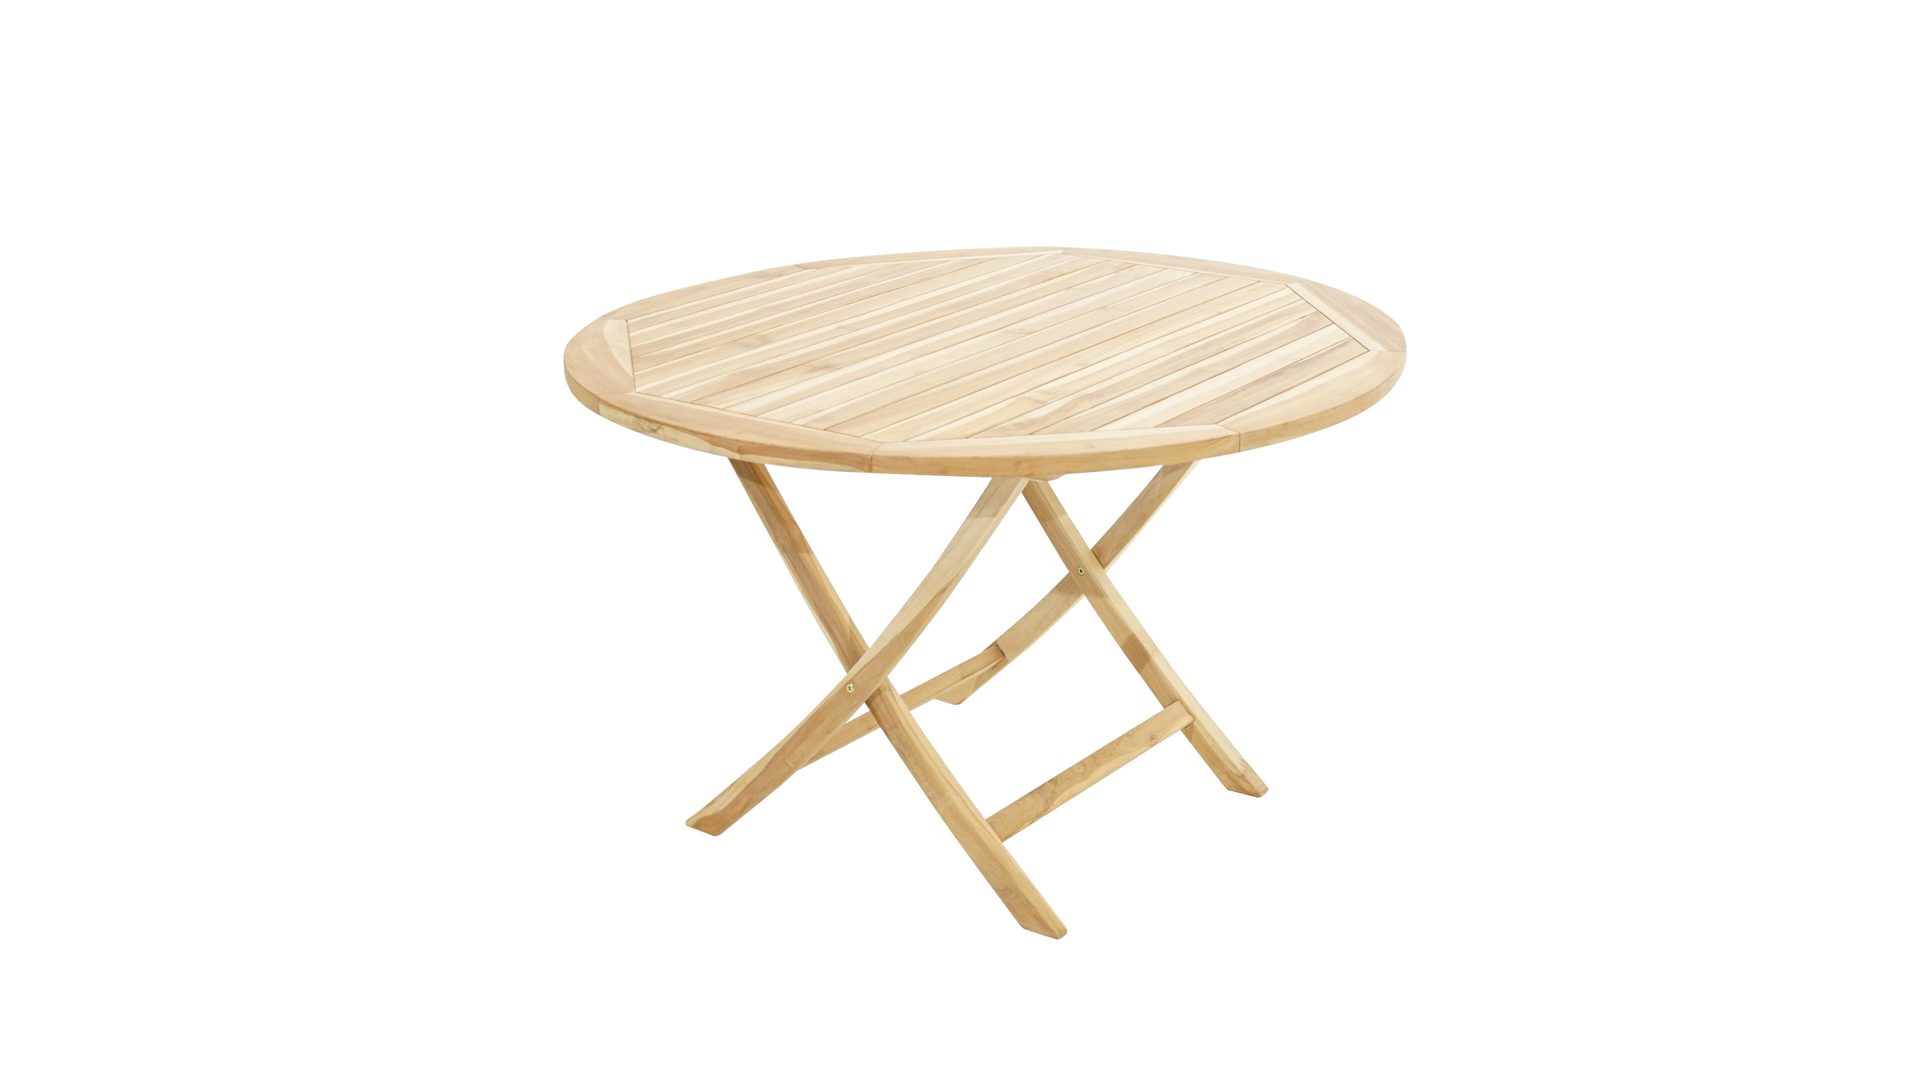 Gartentisch Ploß aus Holz in Holzfarben Ploß® Klapptisch Lexington ECO bzw. Gartentisch Eco-Teakholz – Durchmesser ca. 120 cm